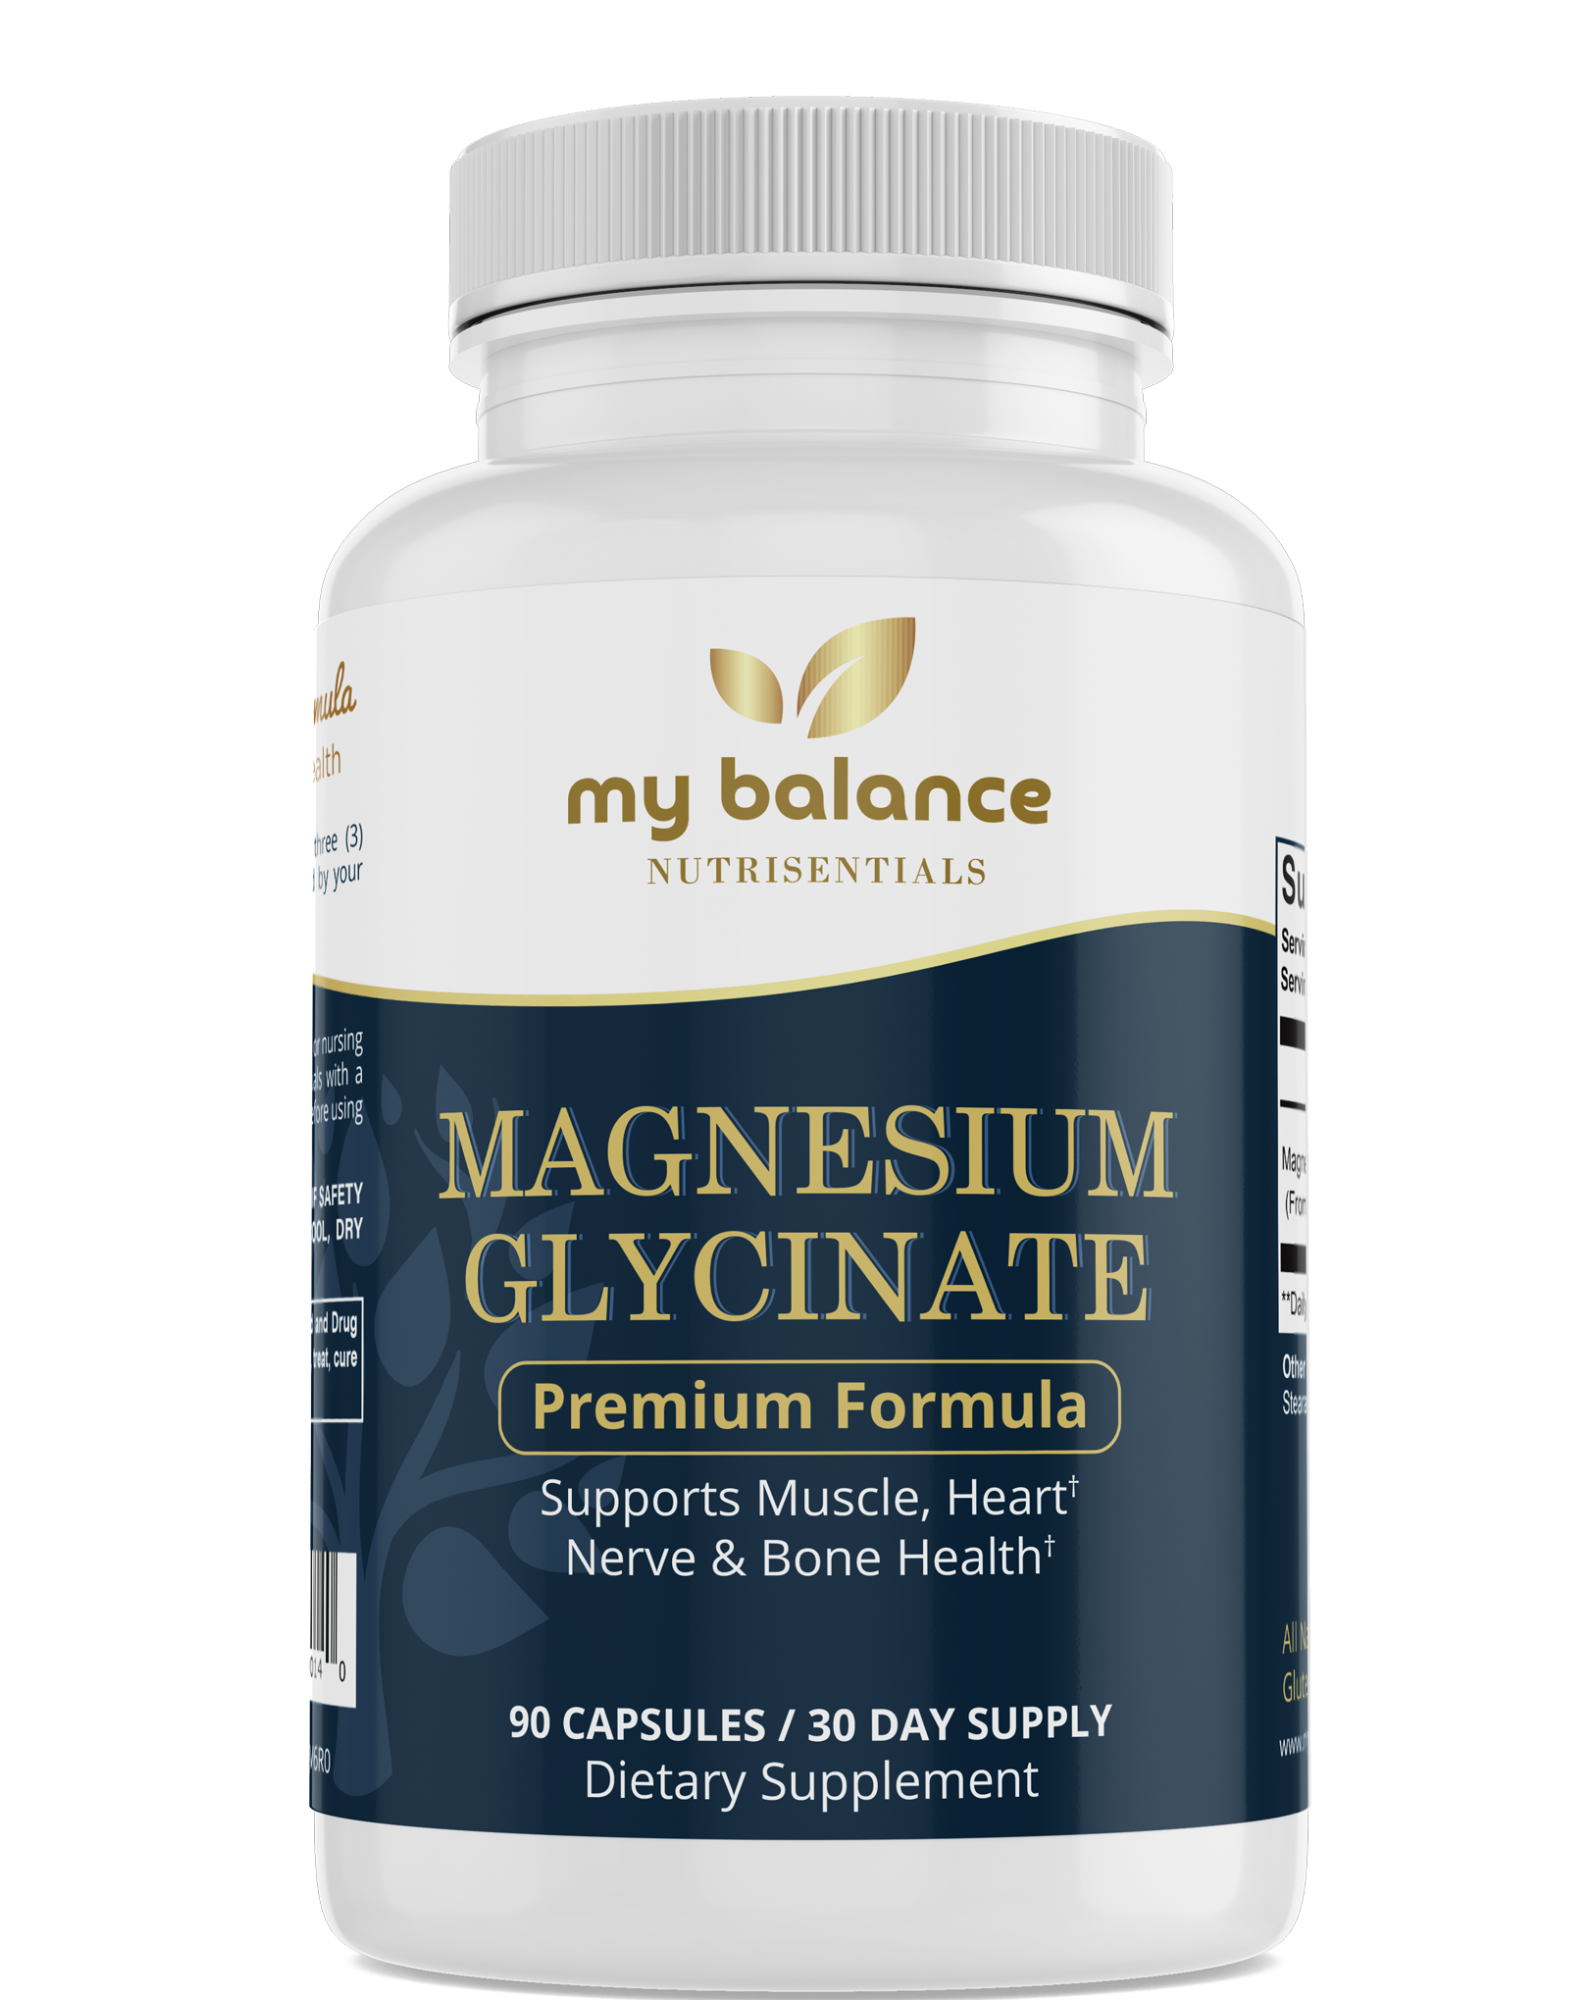  Magnesium Glycinate Supplement